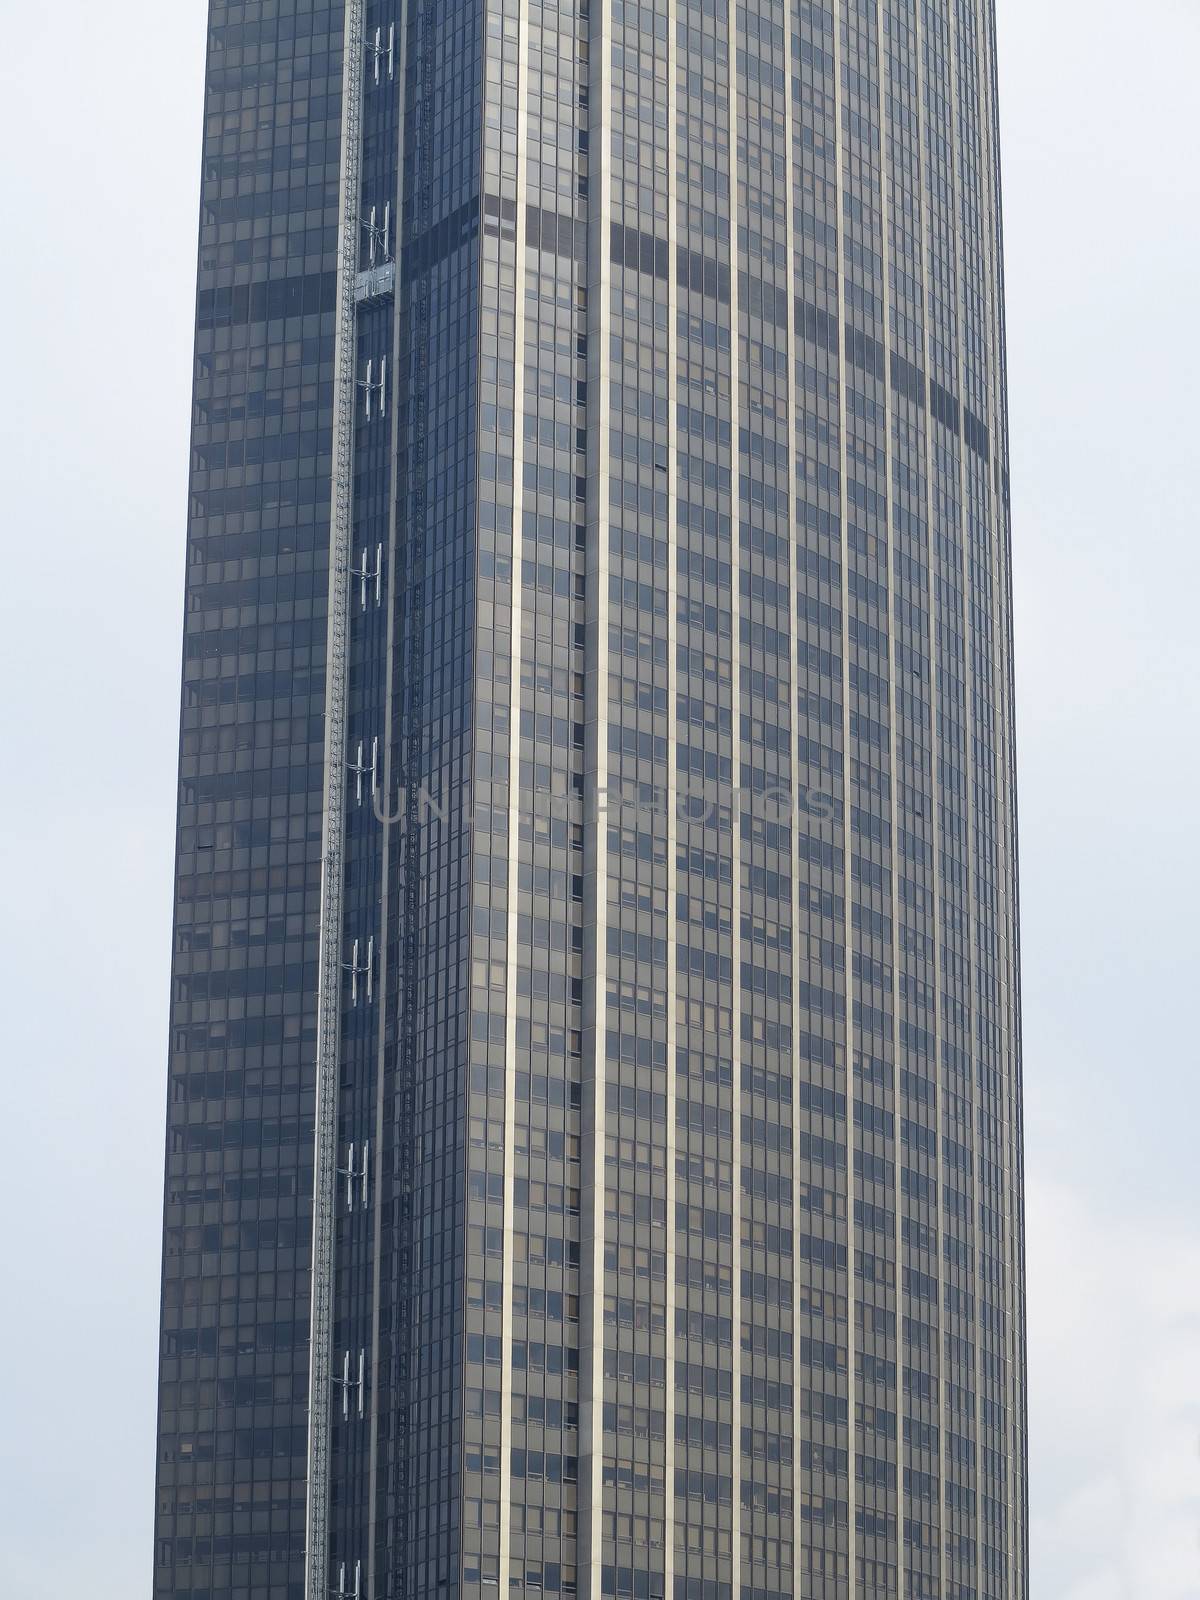 Part of a skyscraper building